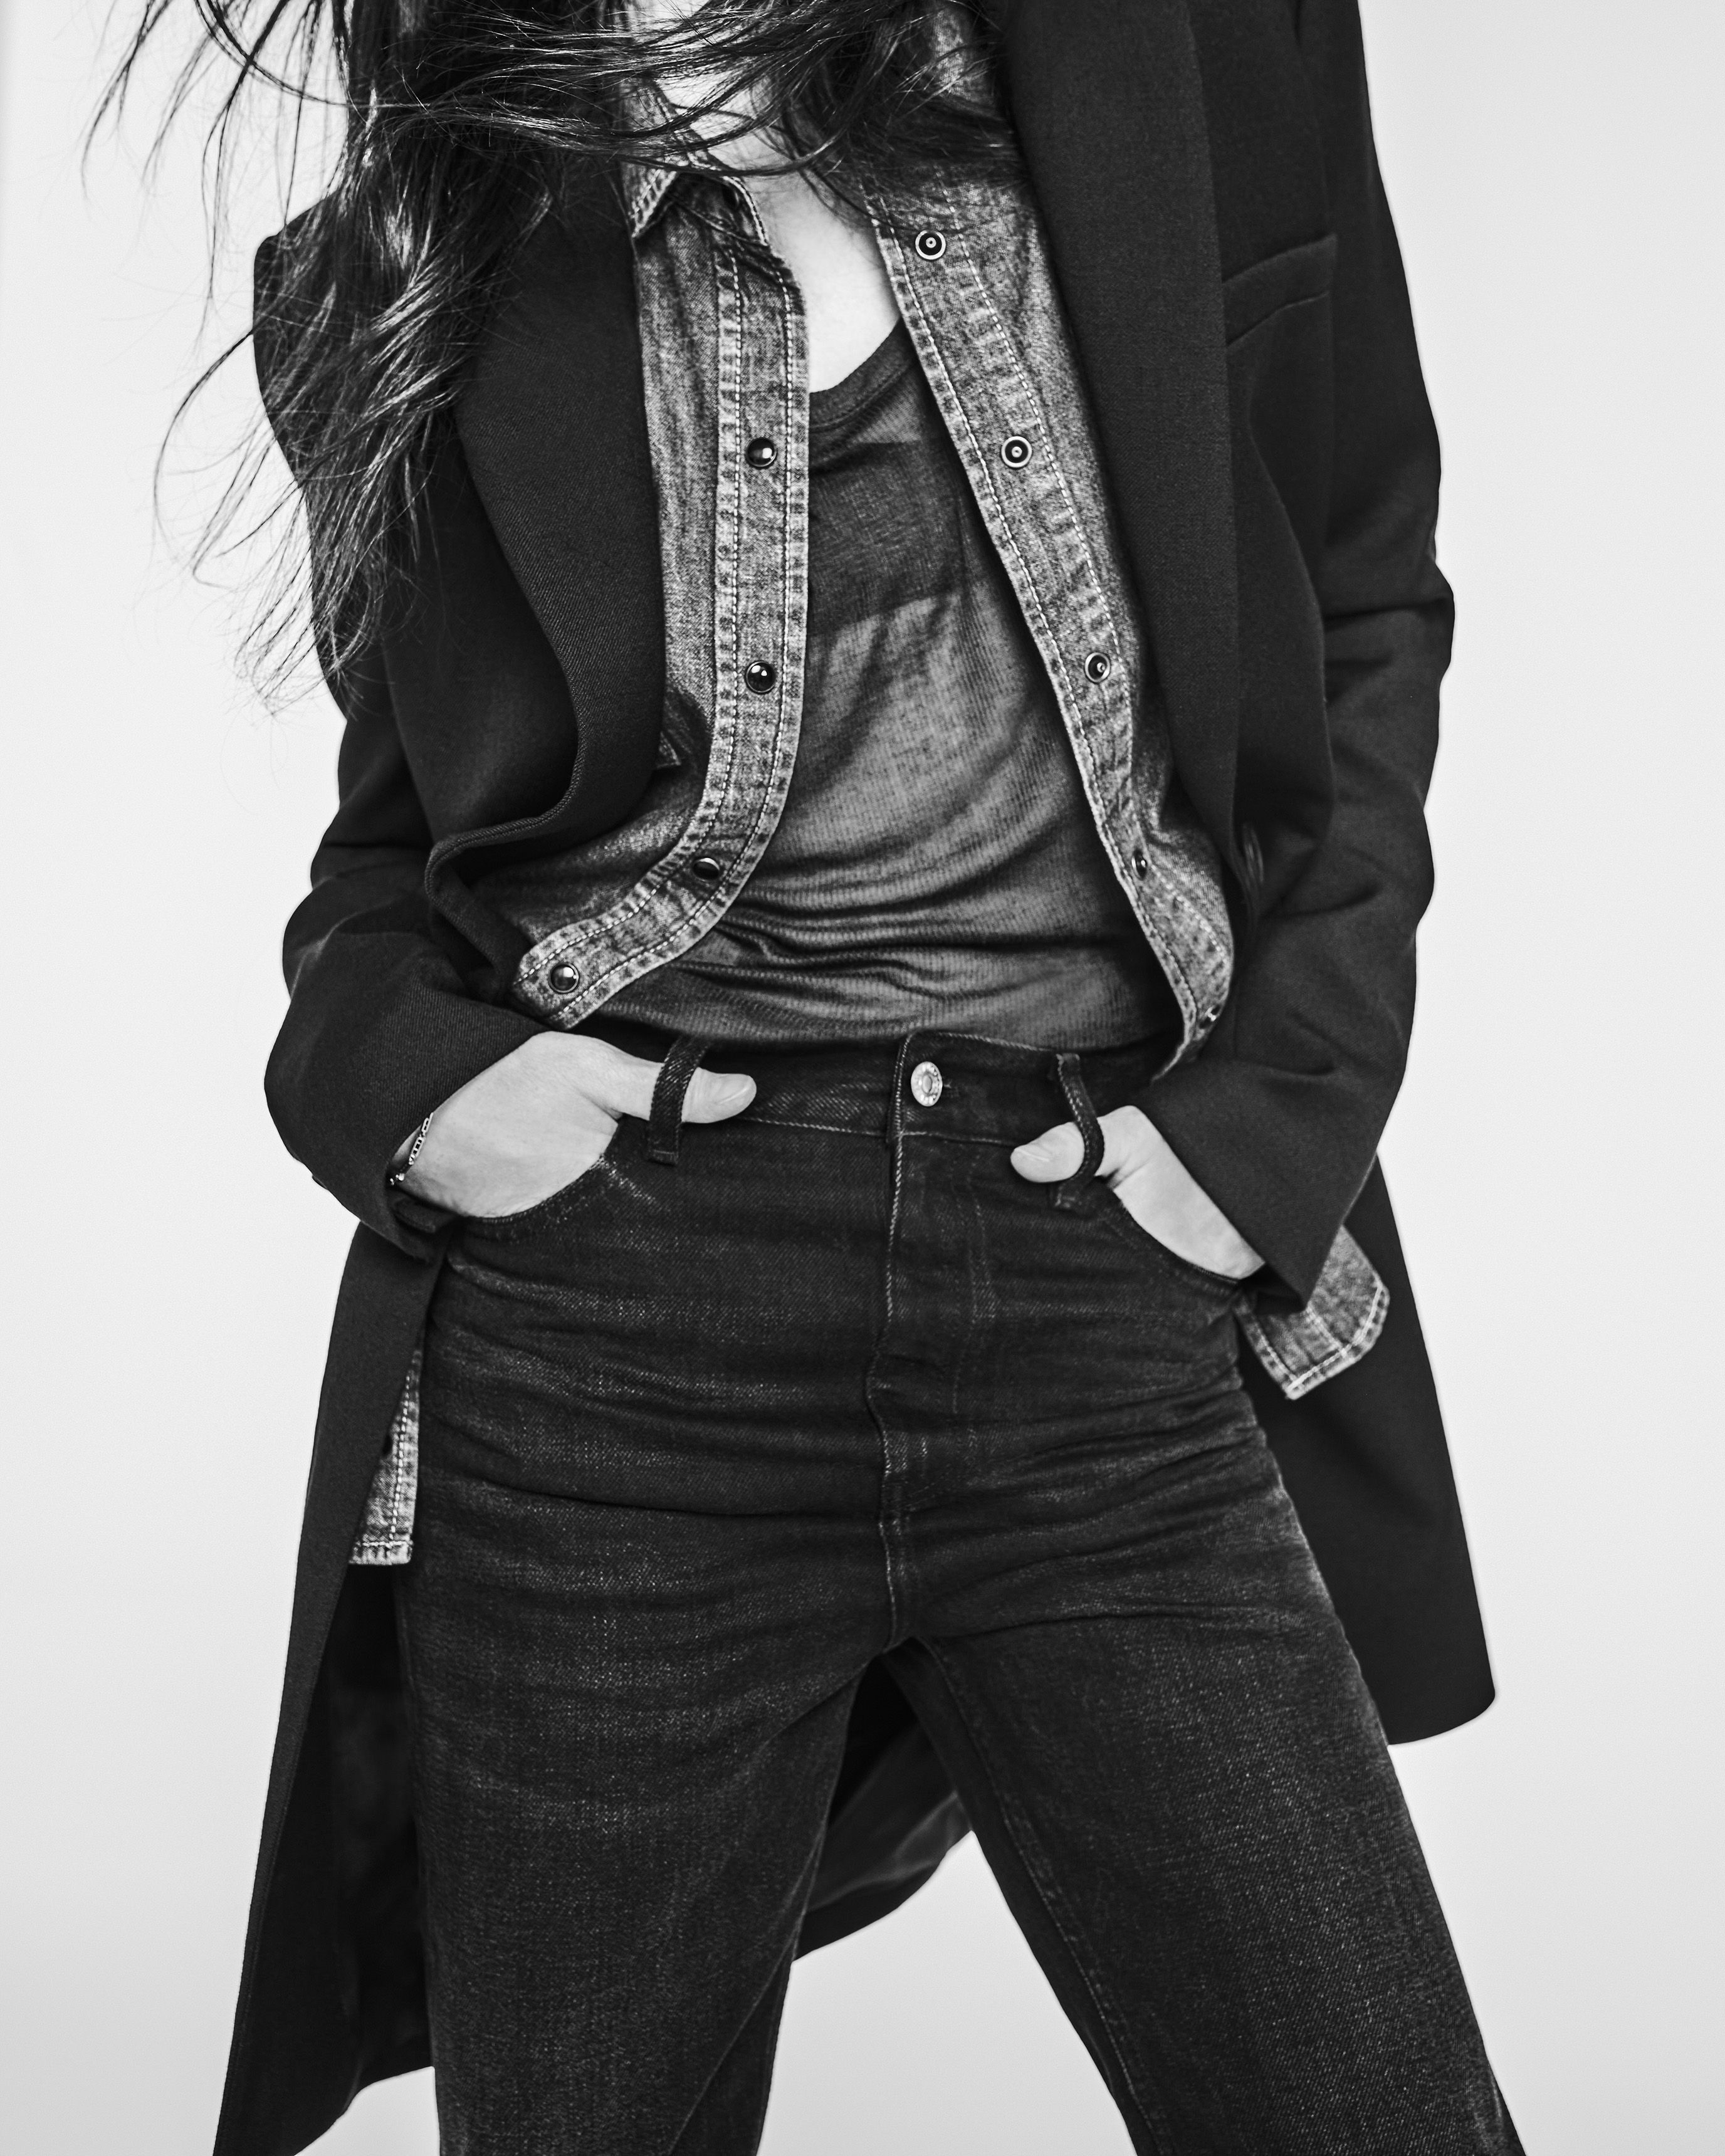 Zara women black cigarette pants trousers size EU 36 | eBay